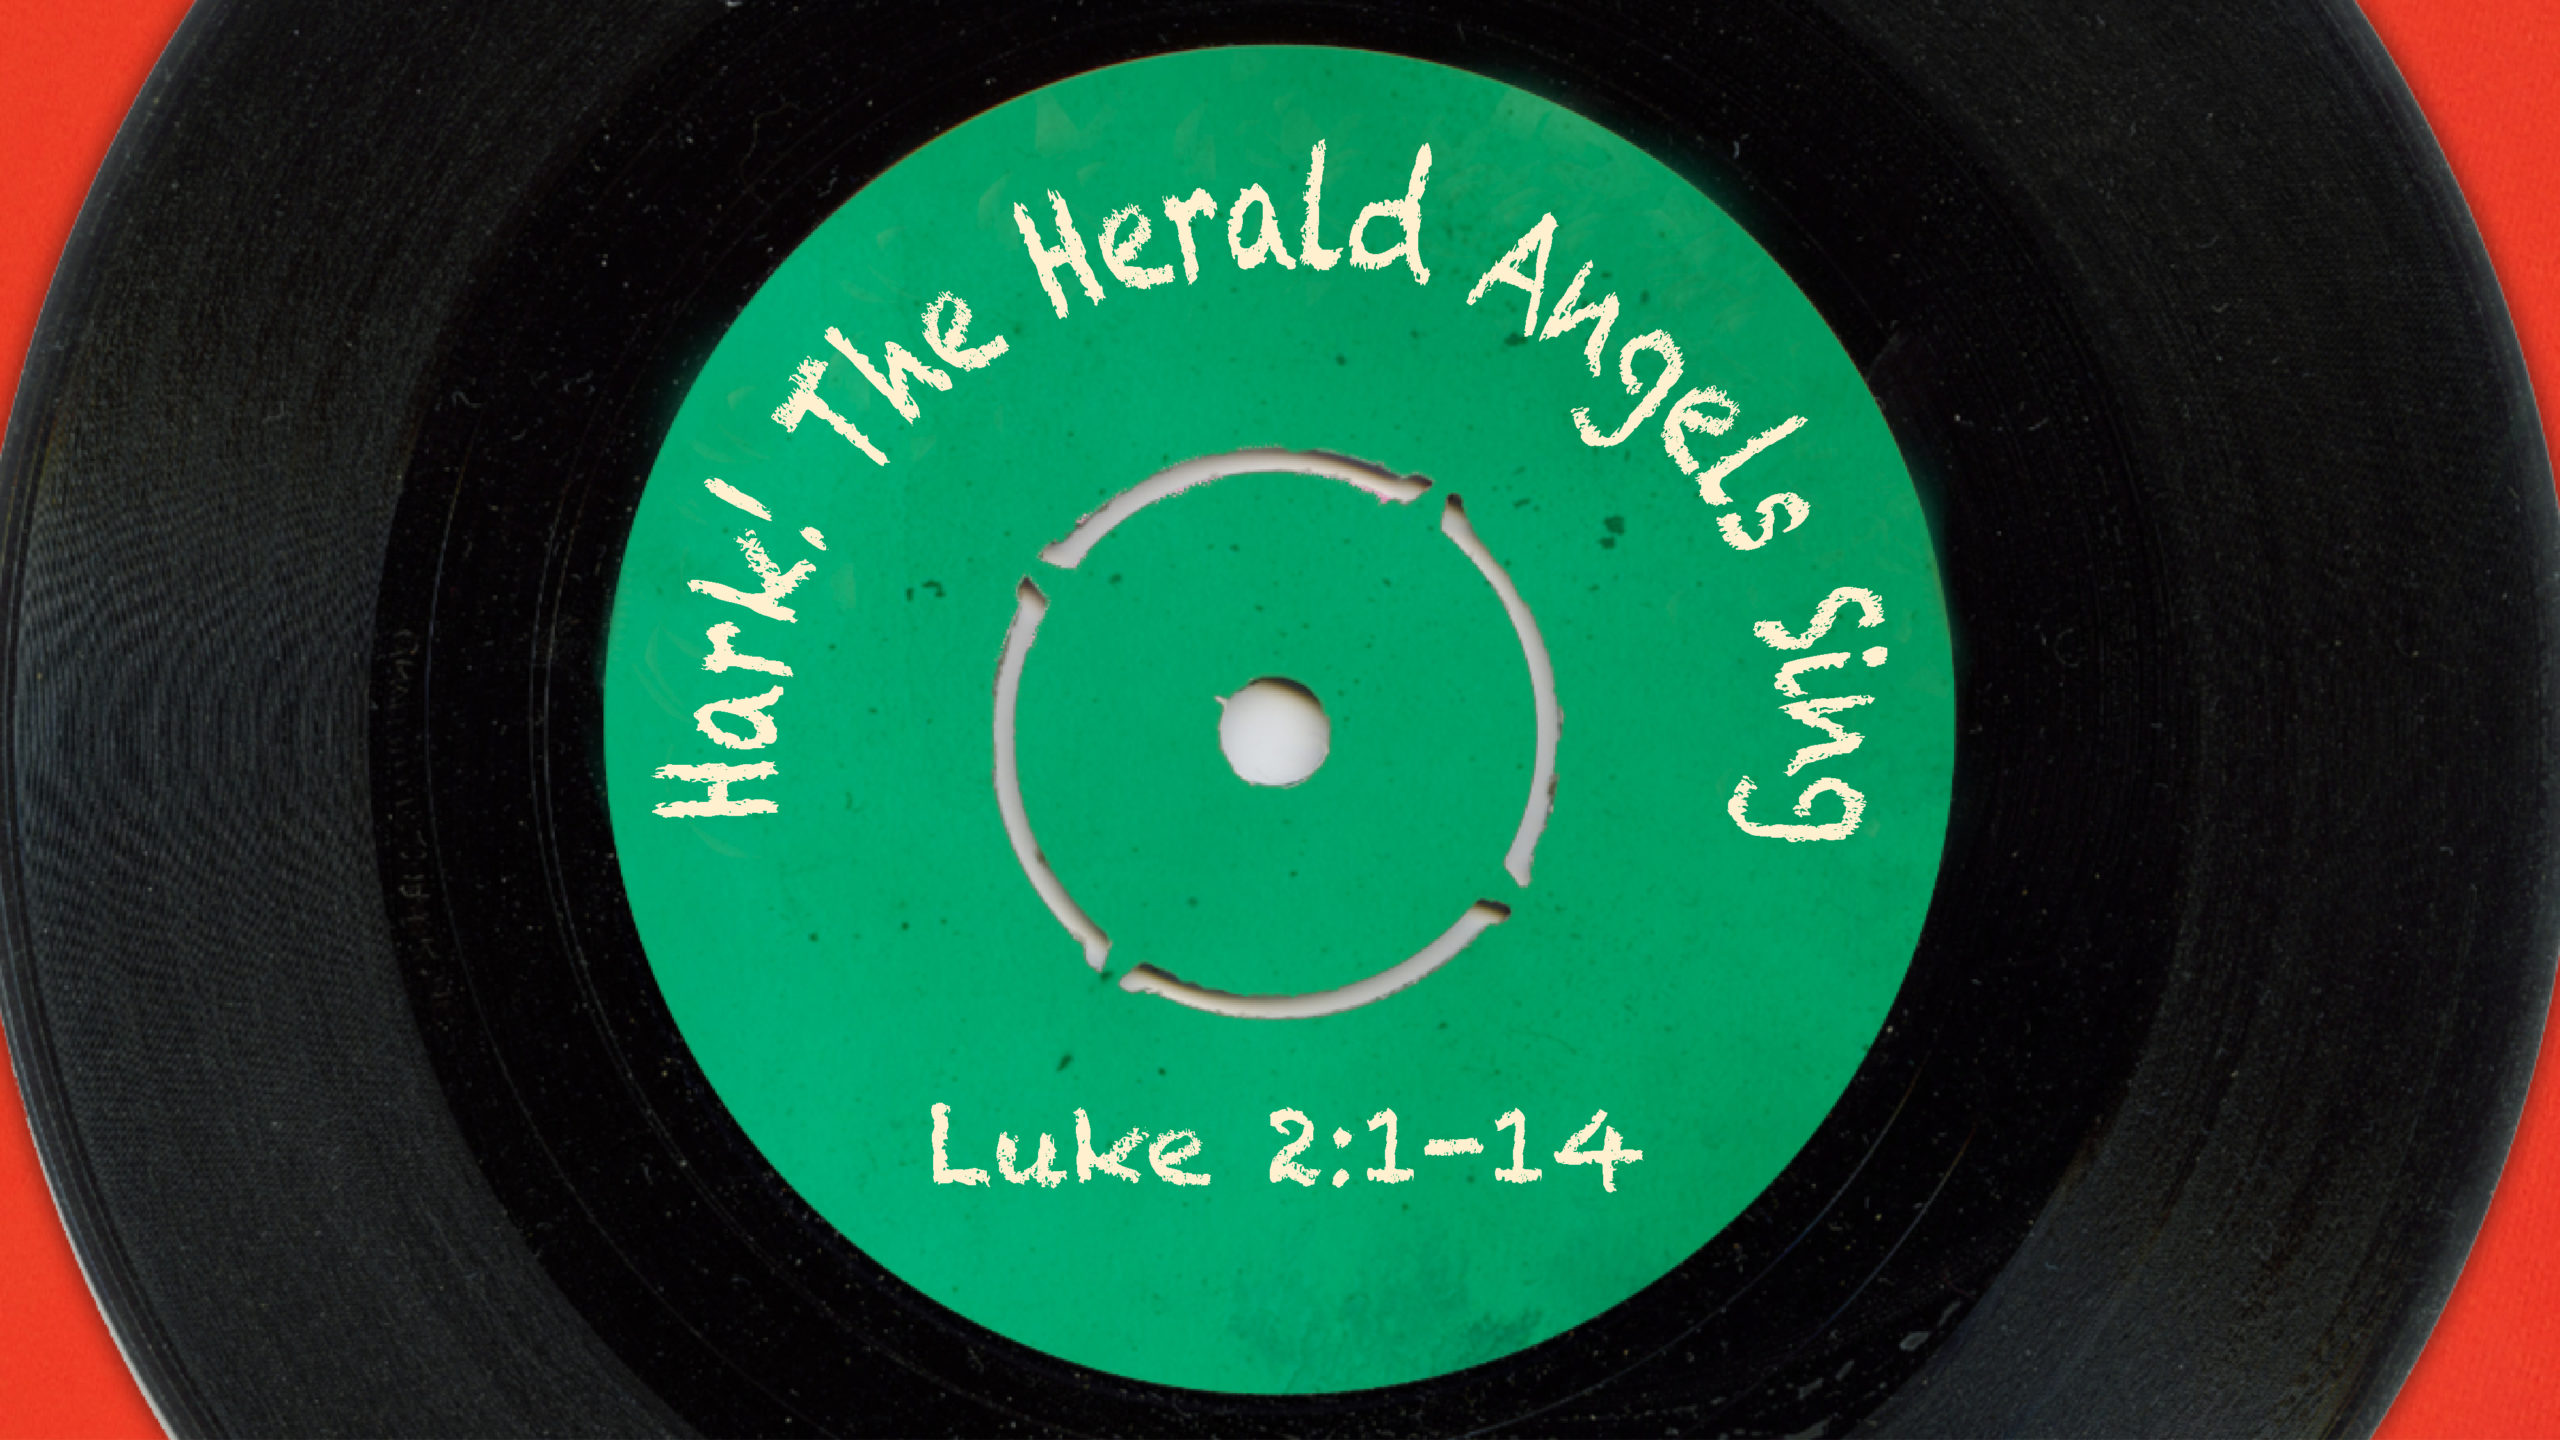 “Hark! The Herald Angels Sing”